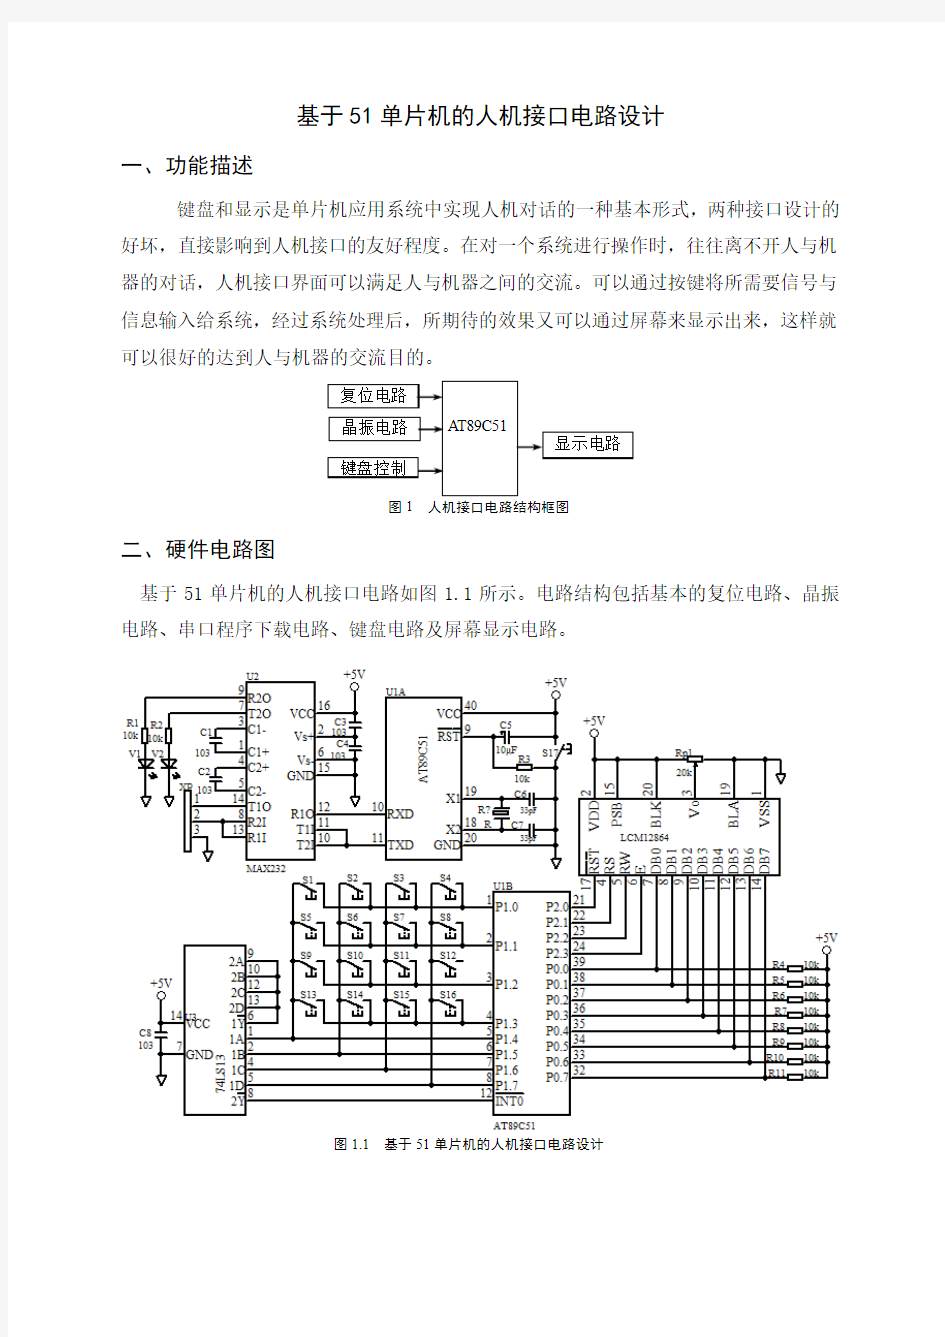 基于51单片机的人机接口电路设计(贺铁梅)2012.09.08